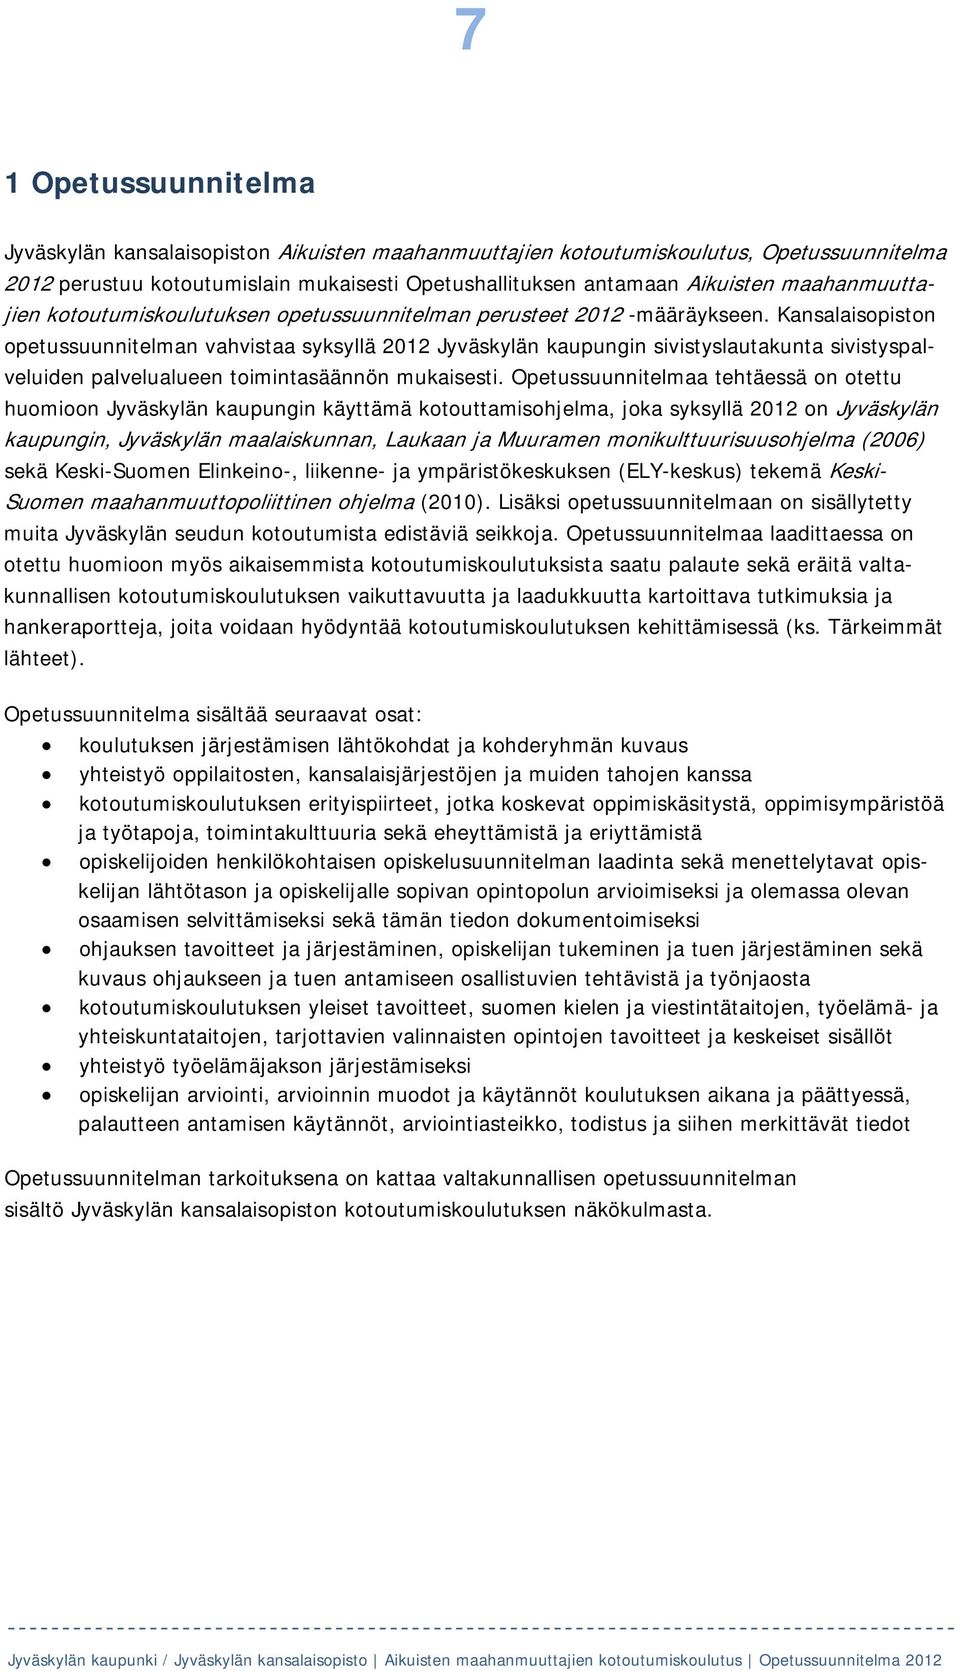 Kansalaisopiston opetussuunnitelman vahvistaa syksyllä 2012 Jyväskylän kaupungin sivistyslautakunta sivistyspalveluiden palvelualueen toimintasäännön mukaisesti.